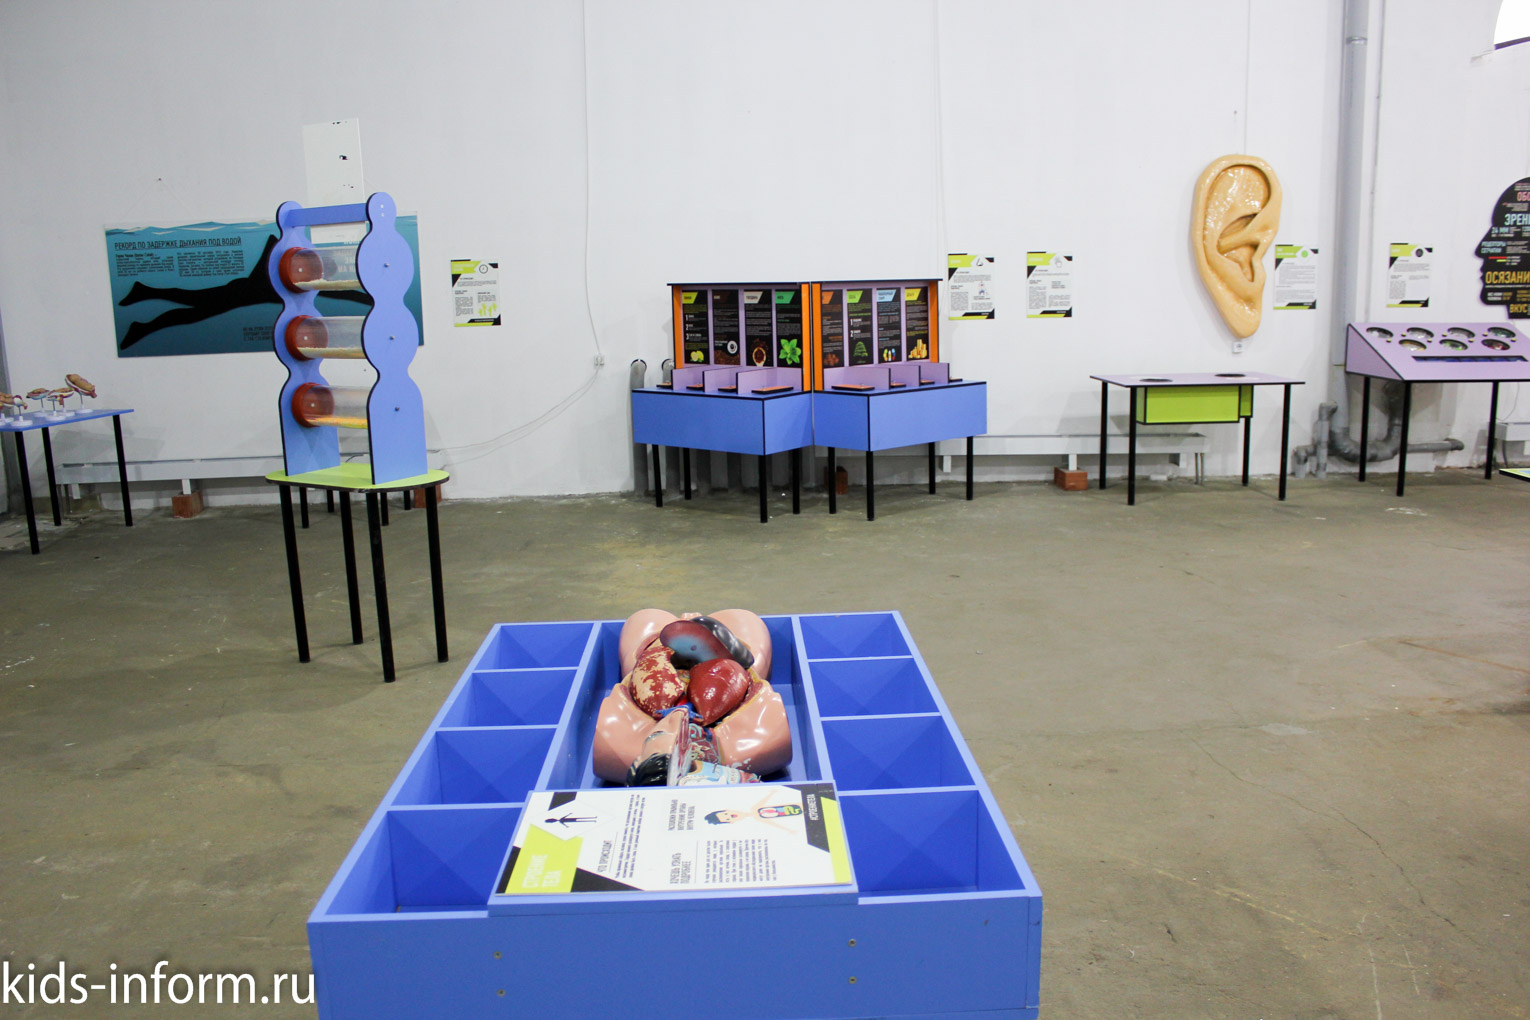 Выставка "Внутри человека" в Саратове